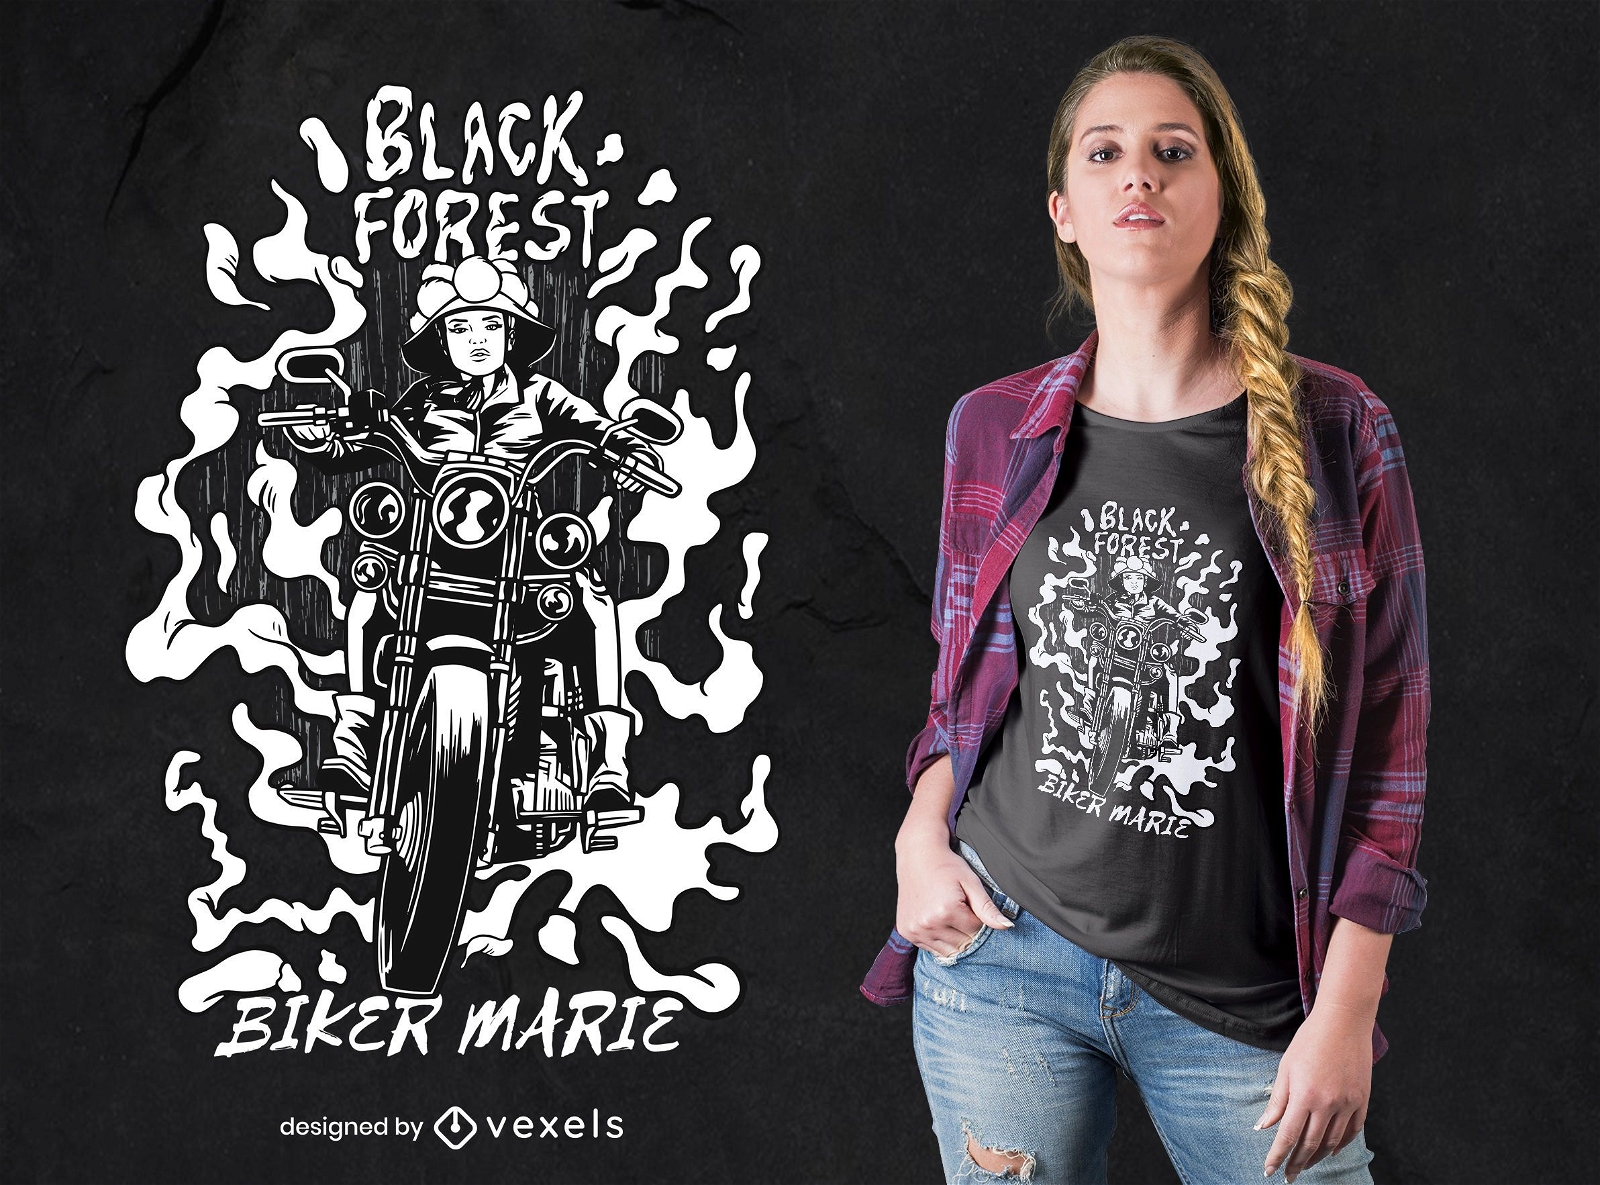 Dise?o de camiseta Black Forest Girl Biker